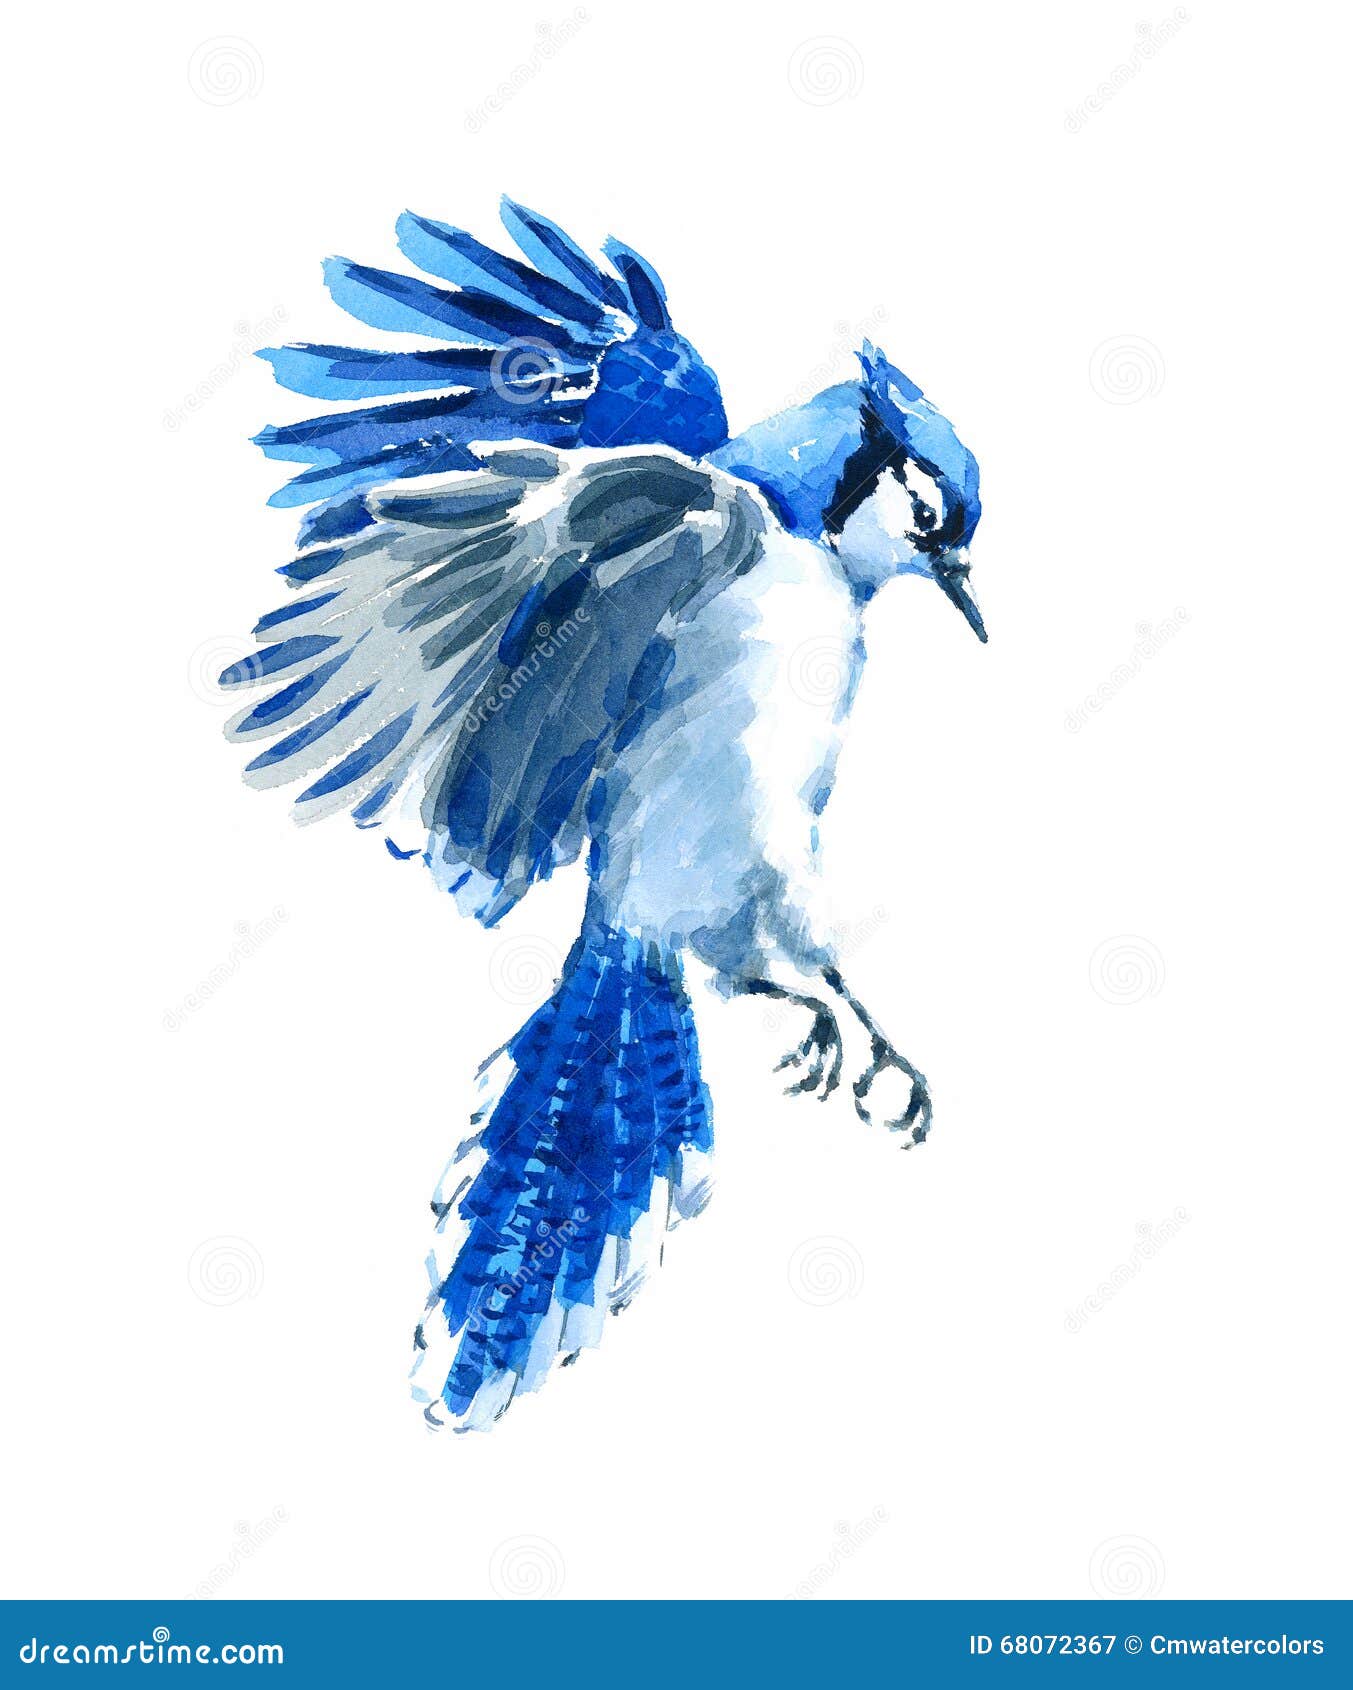 Blue Jay Flying Stock Illustrations 127 Blue Jay Flying Stock Illustrations Vectors Clipart Dreamstime